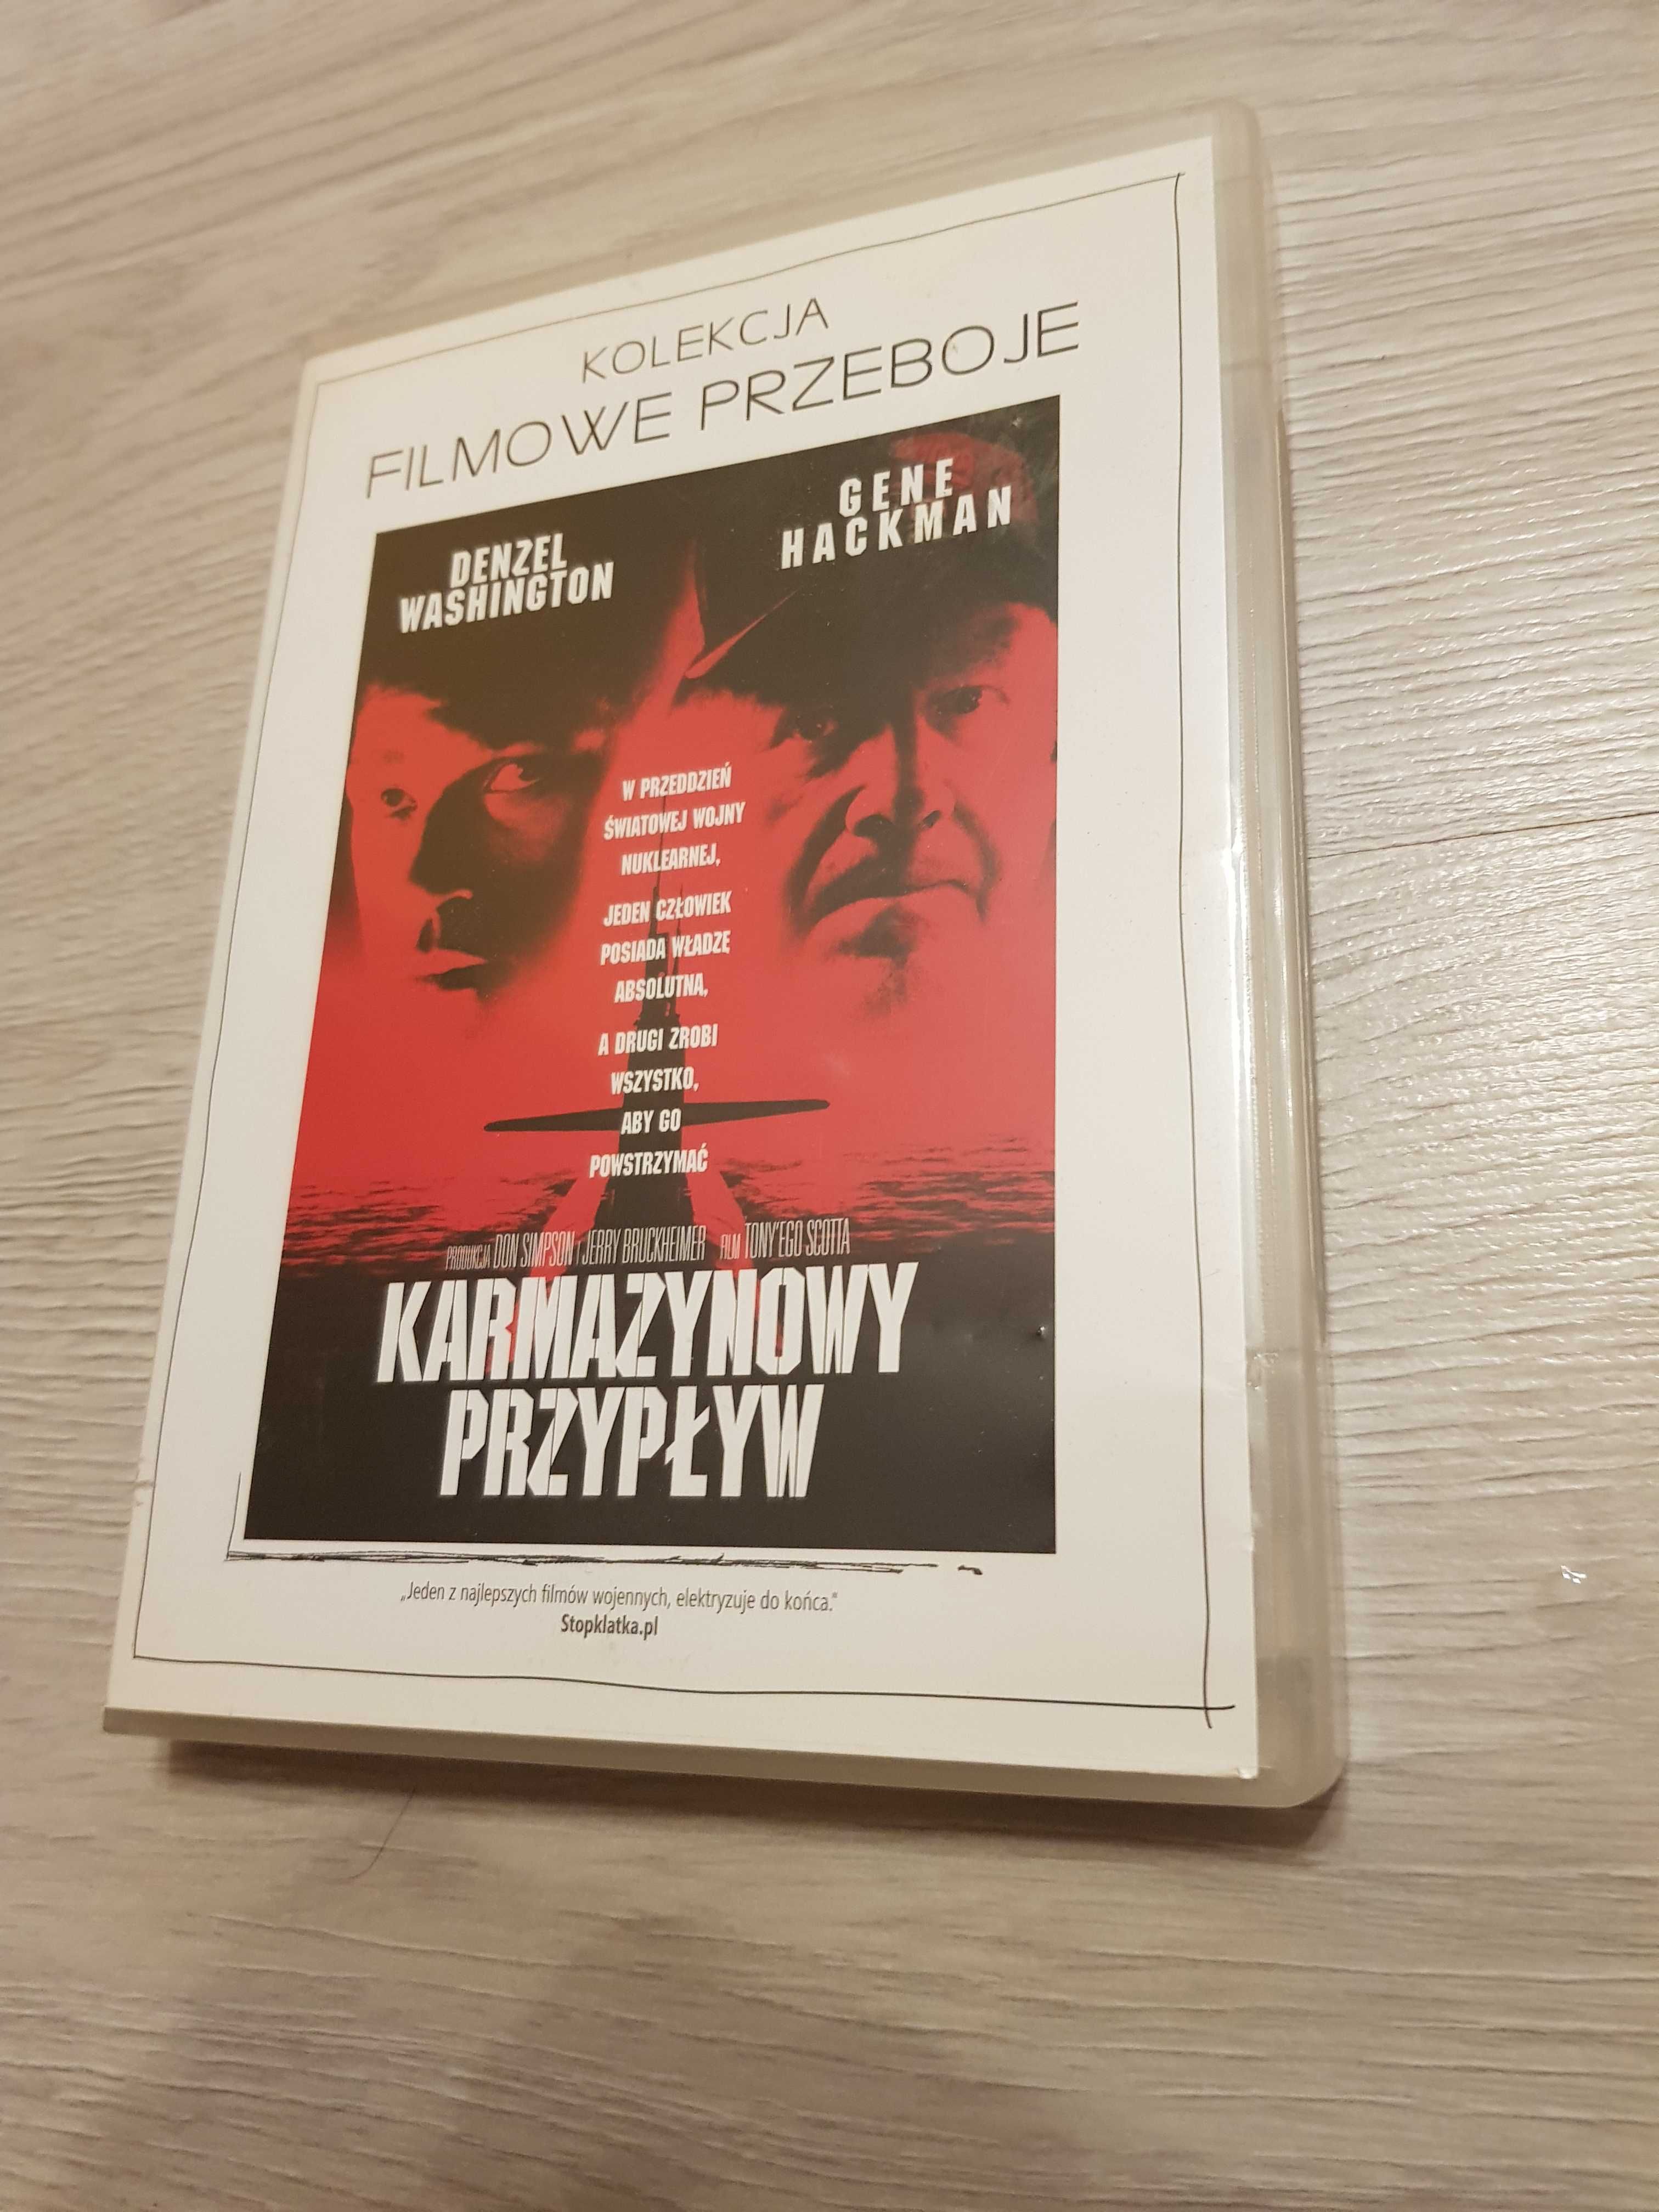 Karmanyzowy Przypływ film dvd Polski dzwięk.